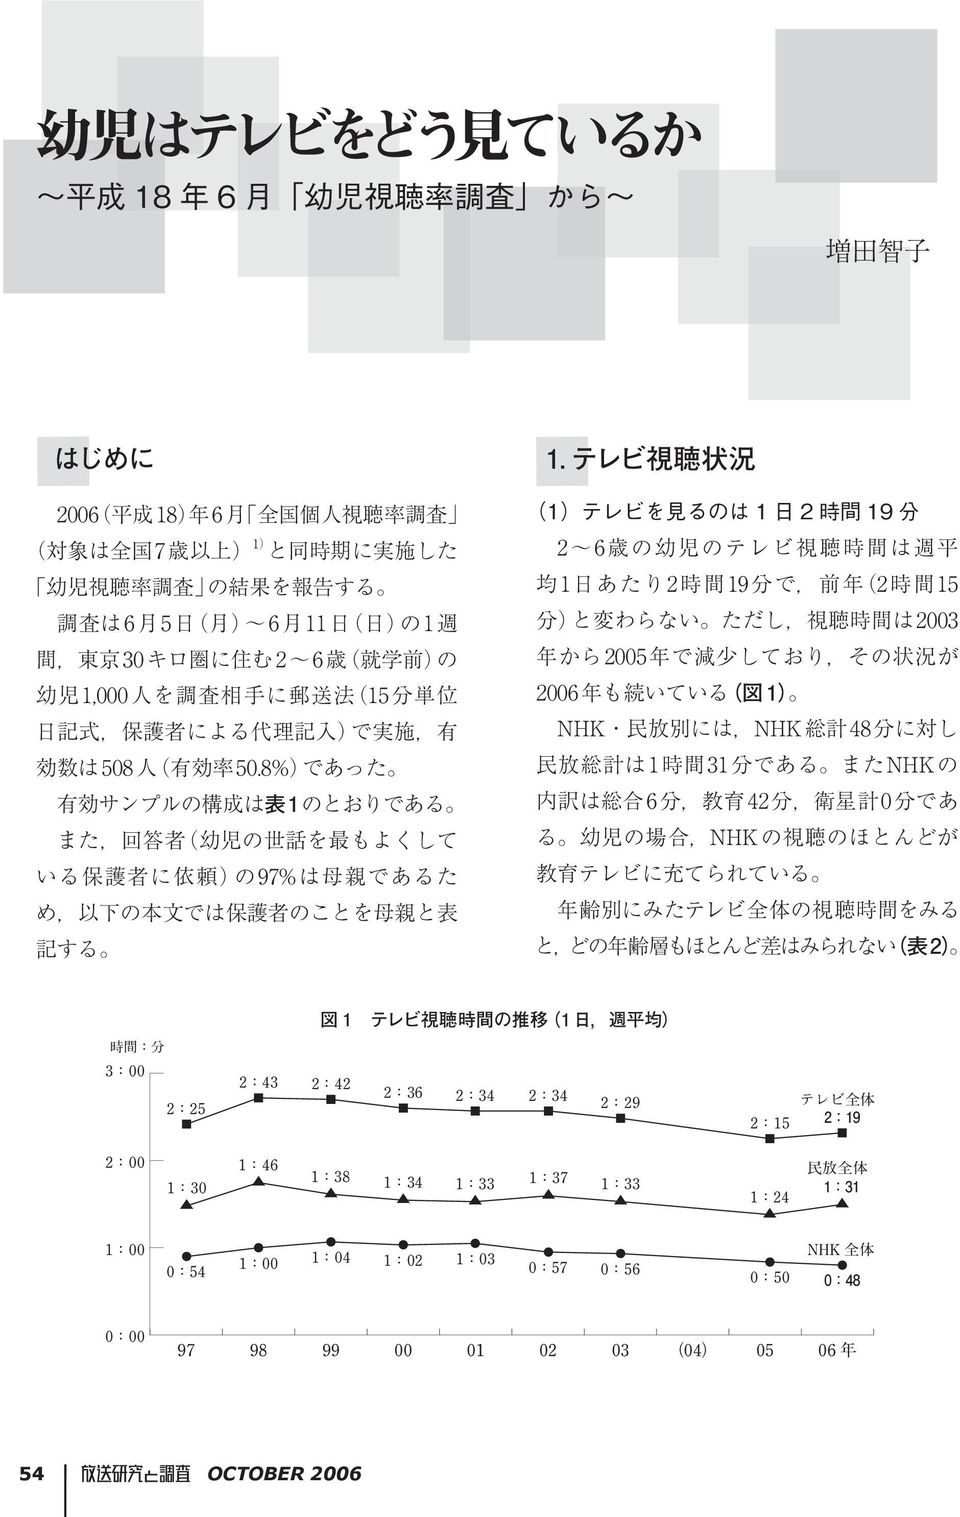 ただし 視聴時間は 2003 間 東京 30 キロ圏に住む 2 6 歳 就学前 の 年から 2005 年で減少しており その状況が 幼児 1,000 人を調査相手に郵送法 15 分単位 2006 年も続いている 図 1 NHK 民放別には NHK 総計 48 分に対し 日記式 保護者による代理記入 で実施 有 民放総計は 1 時間 31 分である また NHK の 効数は 508 人 有効率